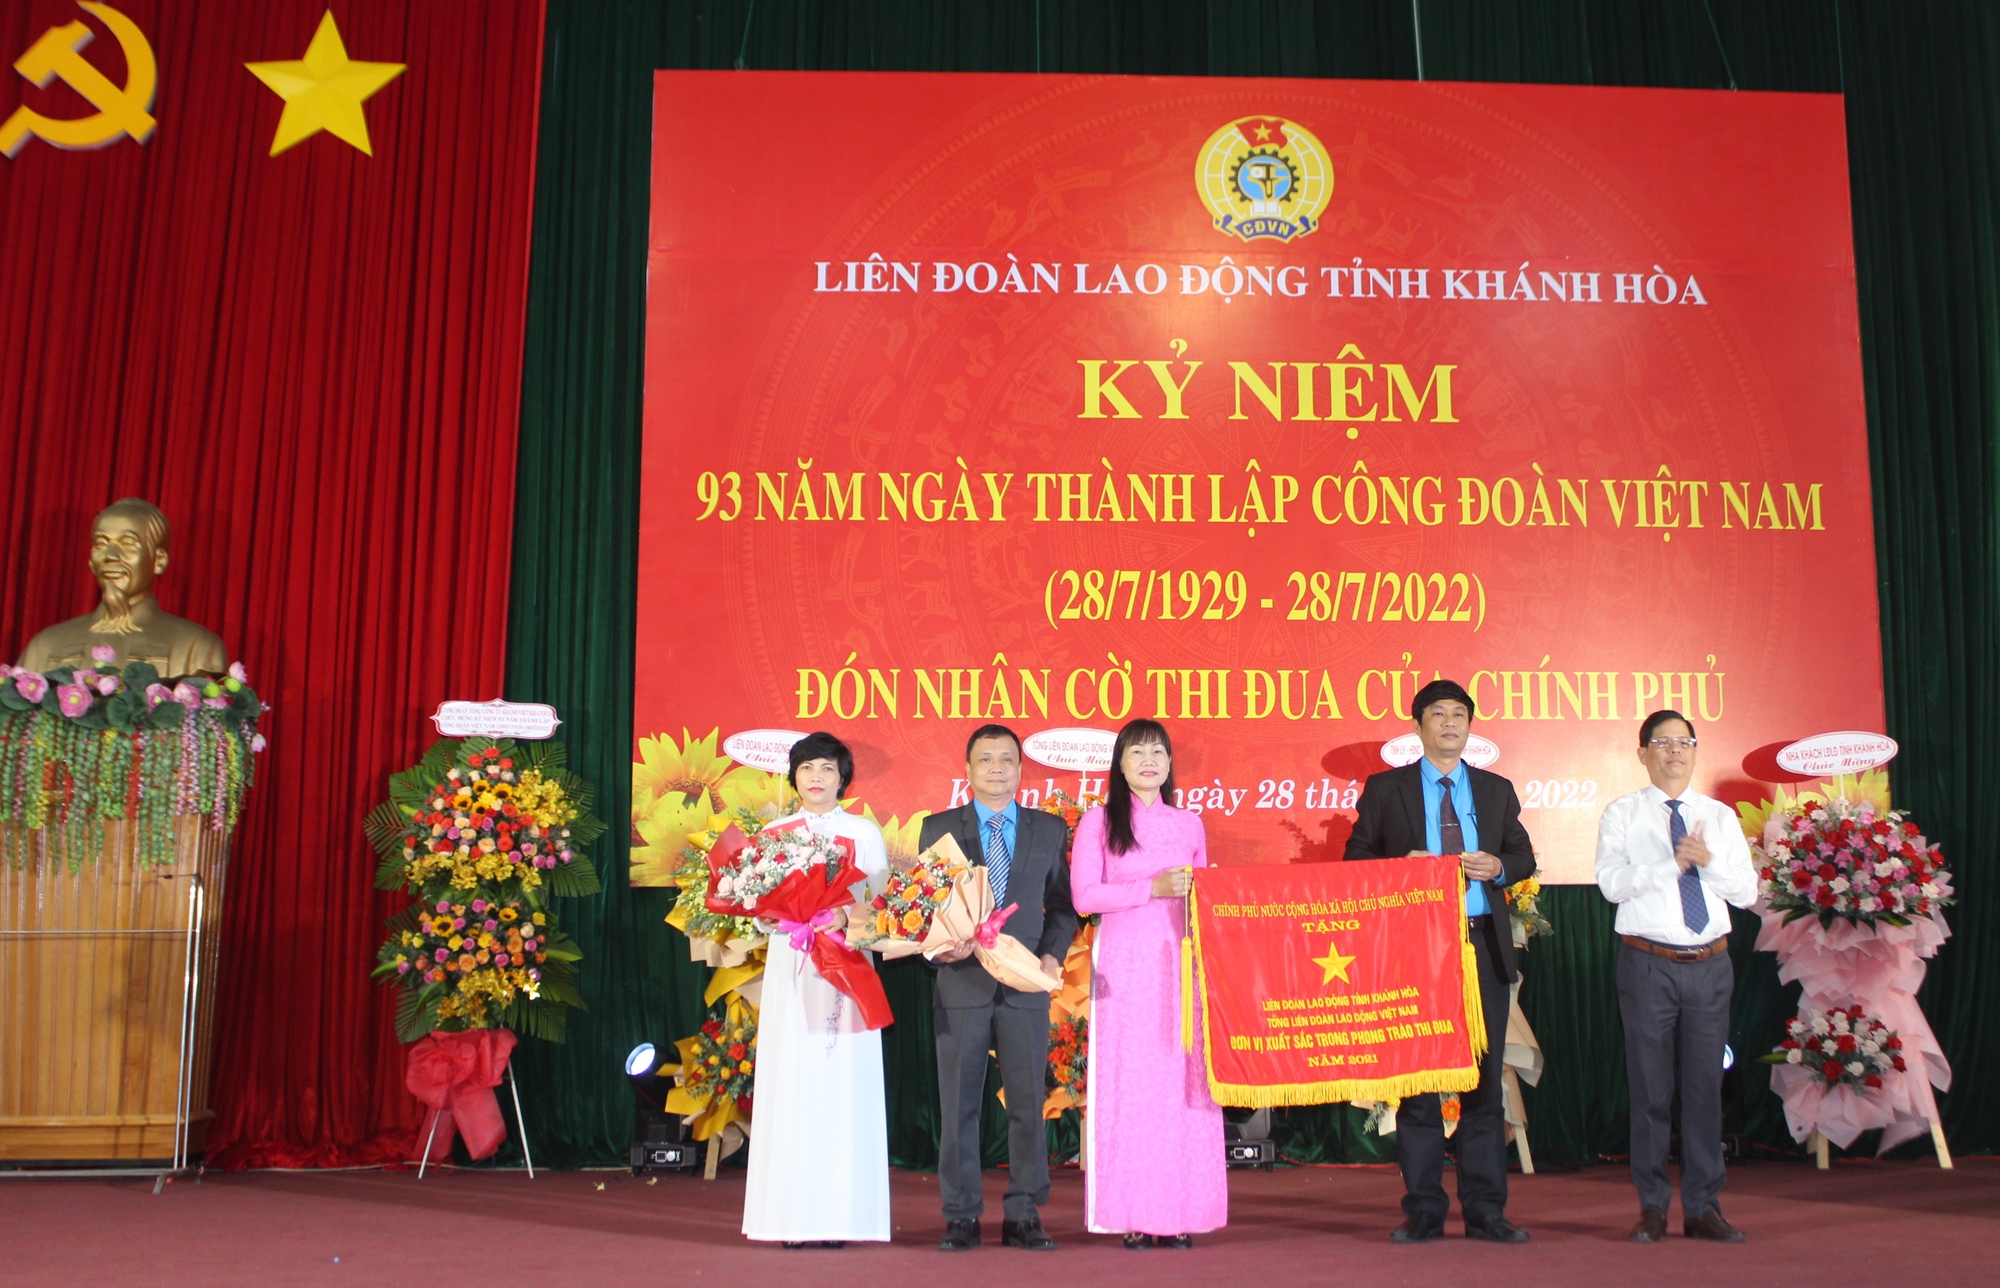 Cờ thi đua của Chính phủ truyền cảm hứng tuyệt vời đến người dân, gợi lên sự chú ý đến sự nỗ lực lớn và thành tựu tuyệt vời của đất nước. Hãy cùng nhìn vào tấm hình liên quan, bạn sẽ thấy rõ sự phát triển và sự tiến bộ của Việt Nam.